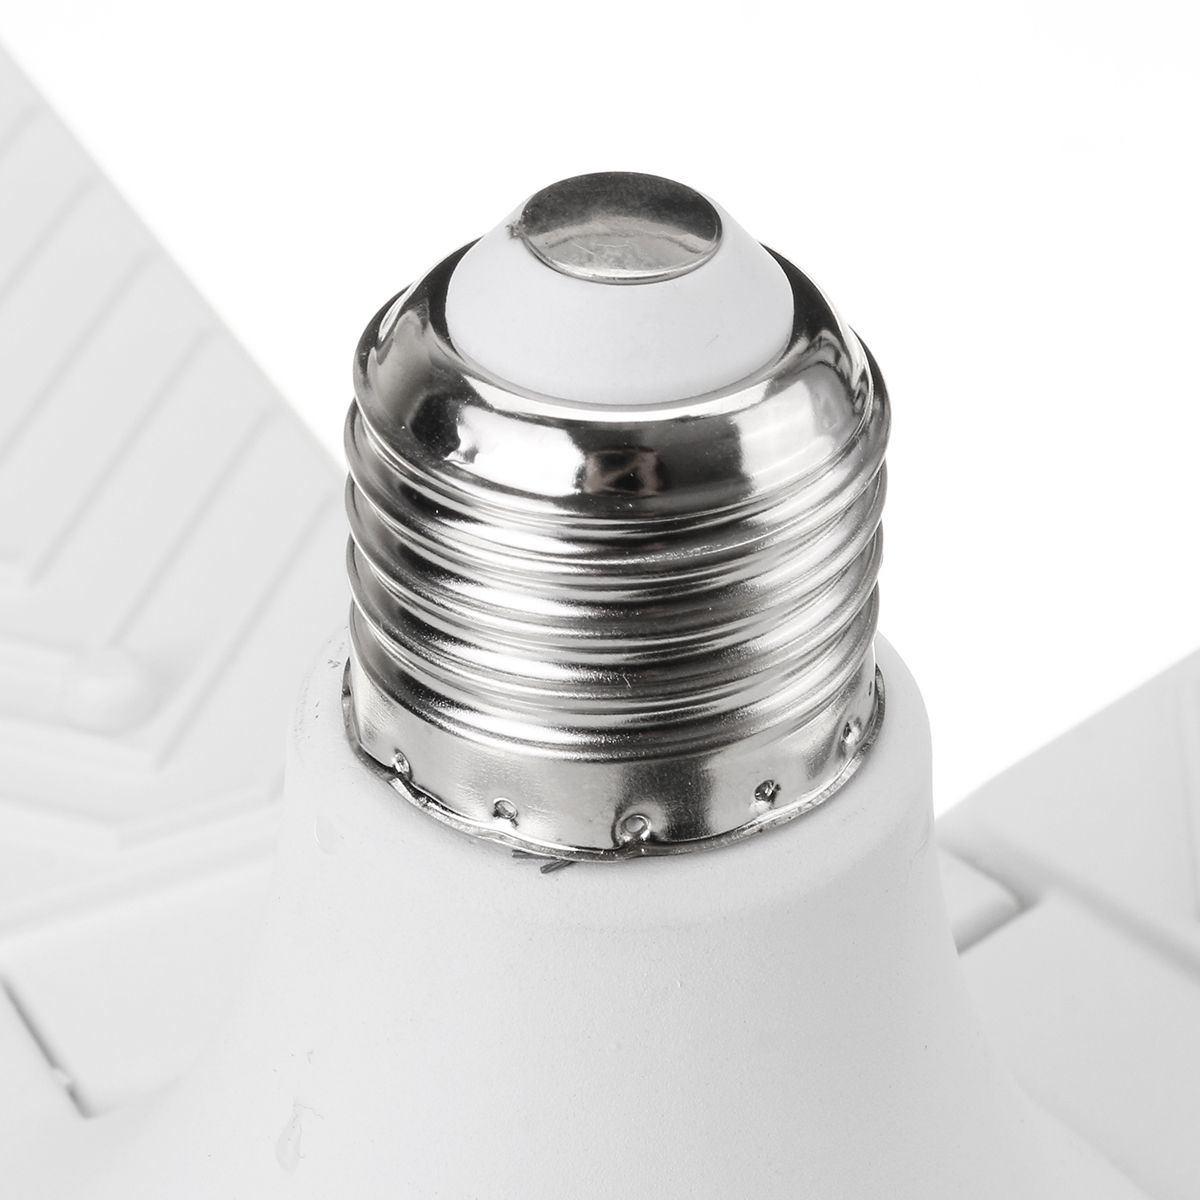 300W-E27-Deformable-LED-Garage-Light-Bulb-Foldable-5-Blade-Ceiling-Lamp-Workshop-Supermarket-Lightin-1627015